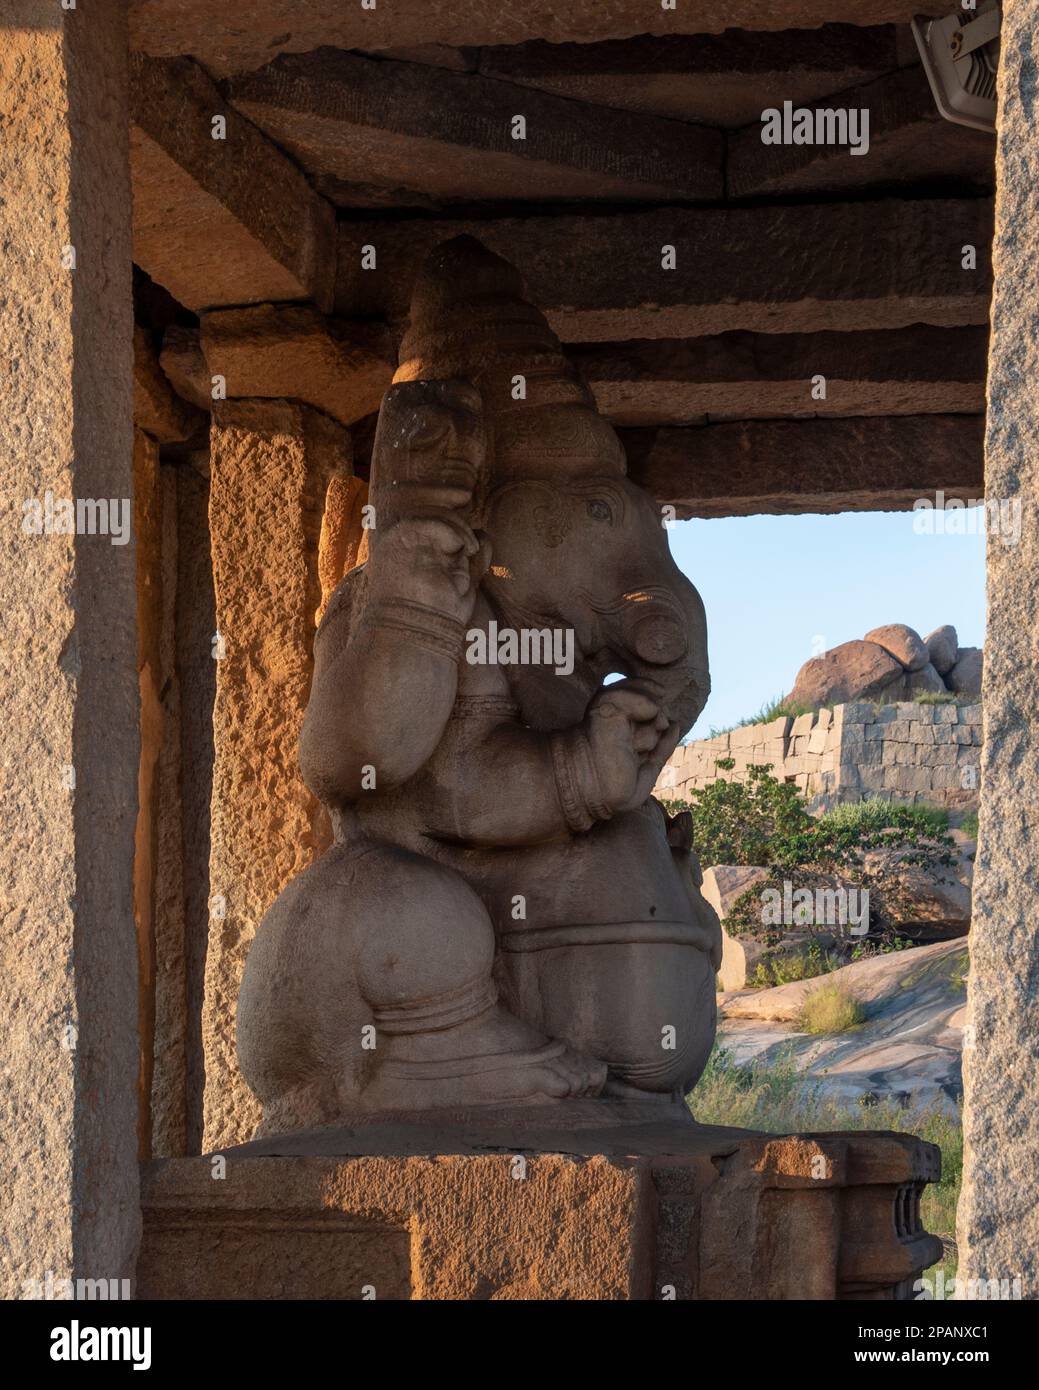 Le temple de Sasivekalu Ganesha à Hampi a une immense statue de Lord Ganesha, sculptée dans un seul bloc de roche. Hampi, la capitale de l'empi de Vijayanagar Banque D'Images